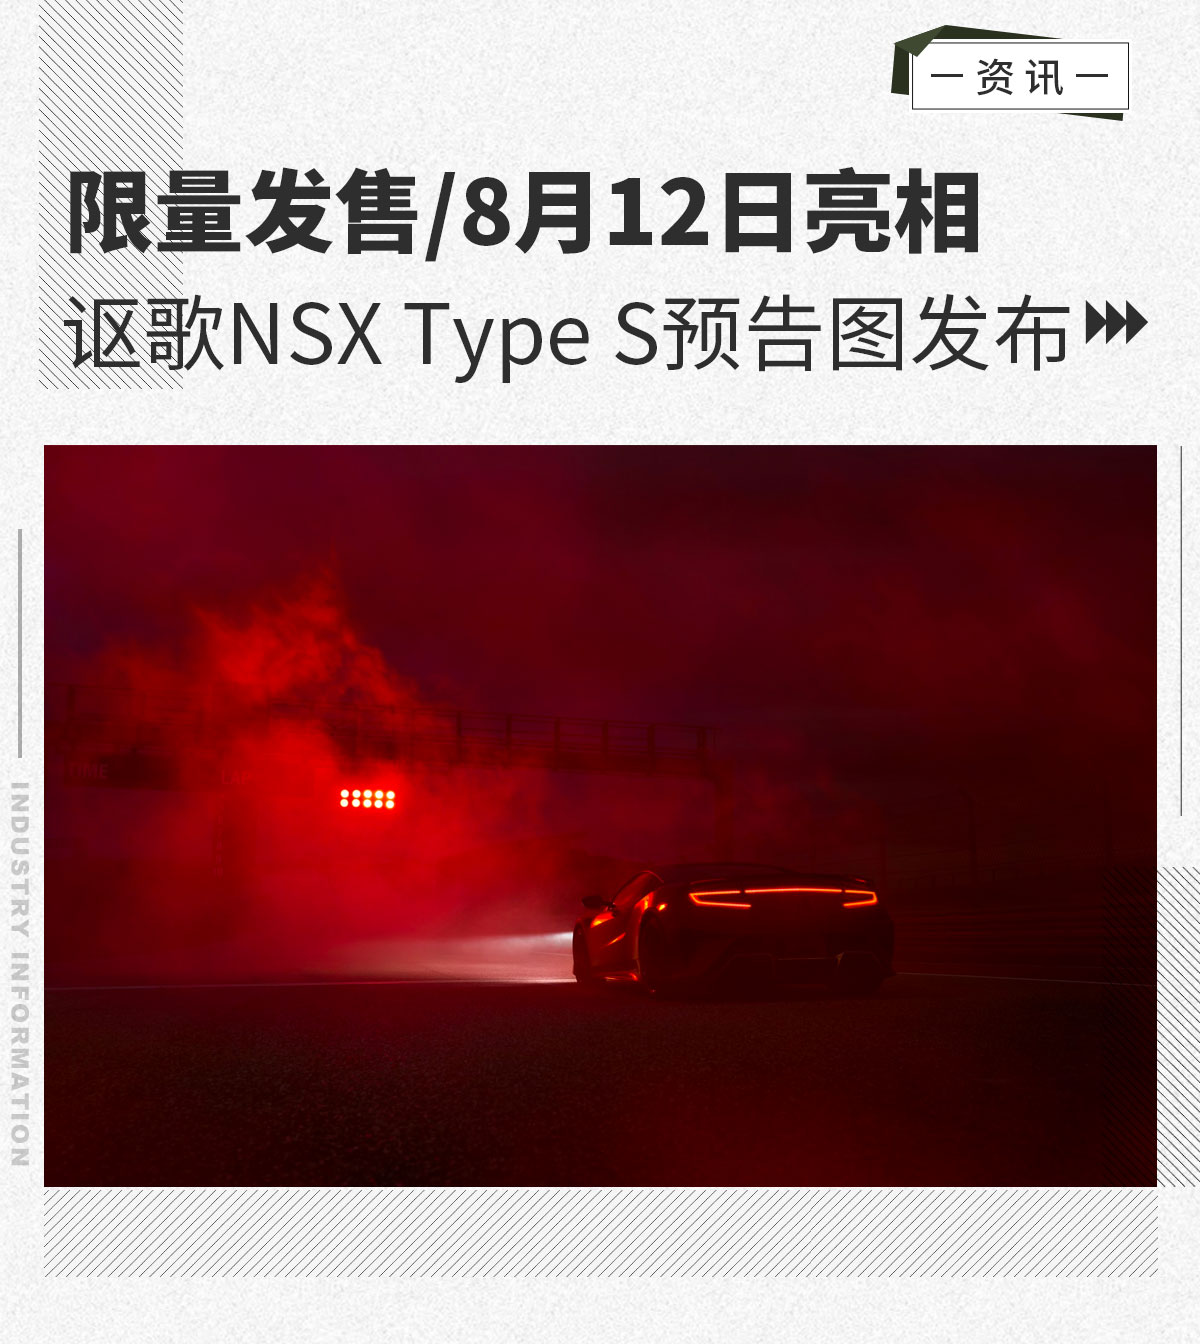 限量发售/8月12日亮相 讴歌NSX Type S预告图